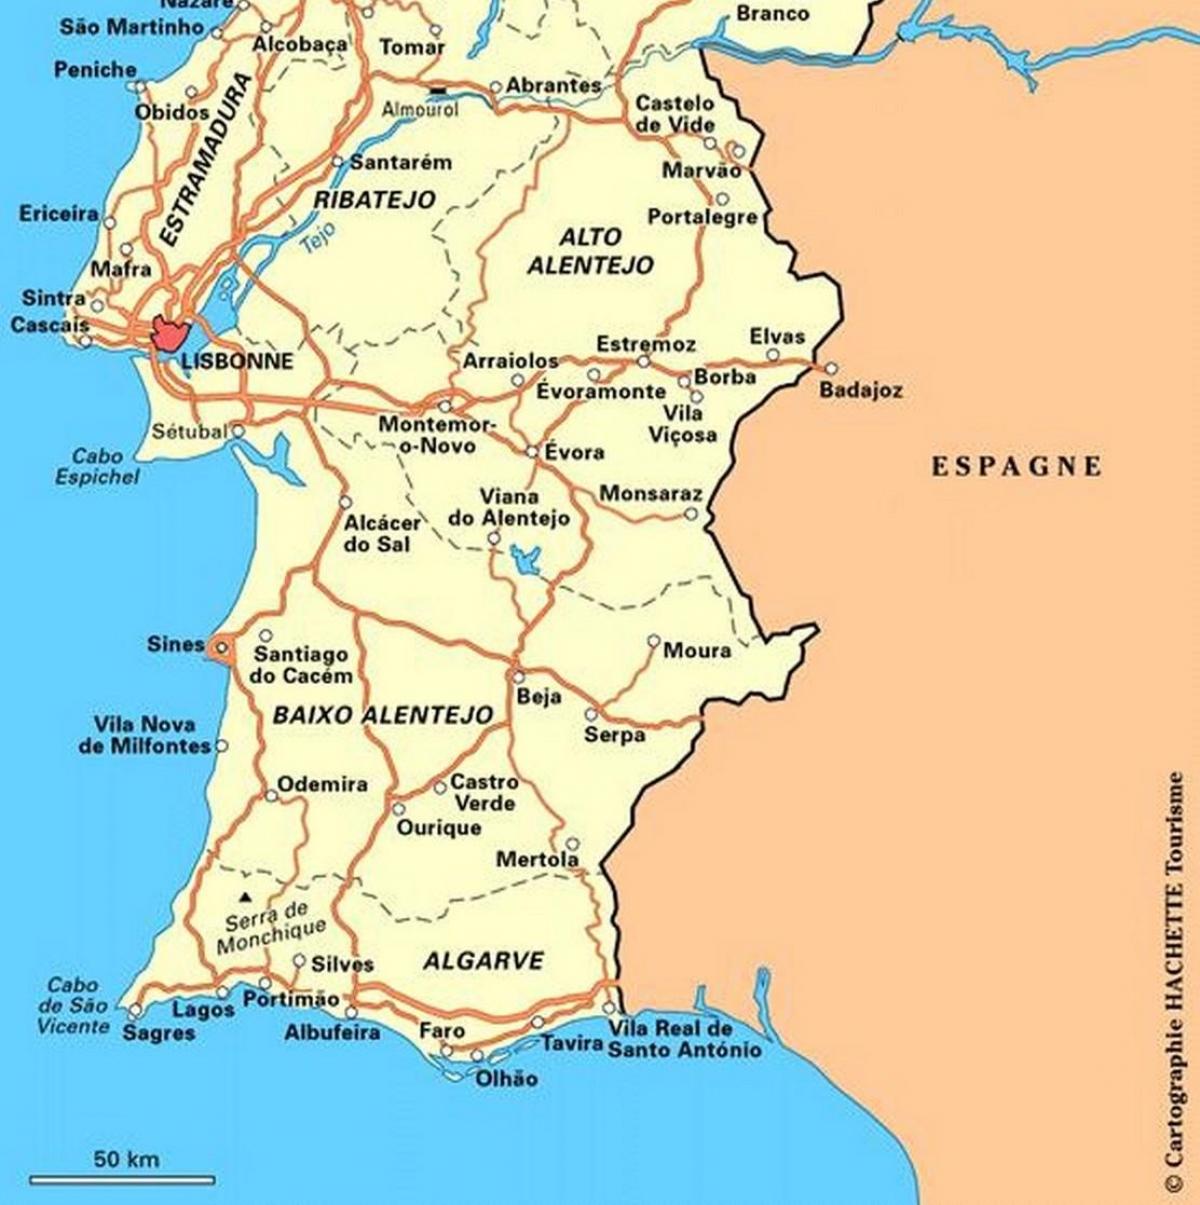 Mapa do Sul de Portugal